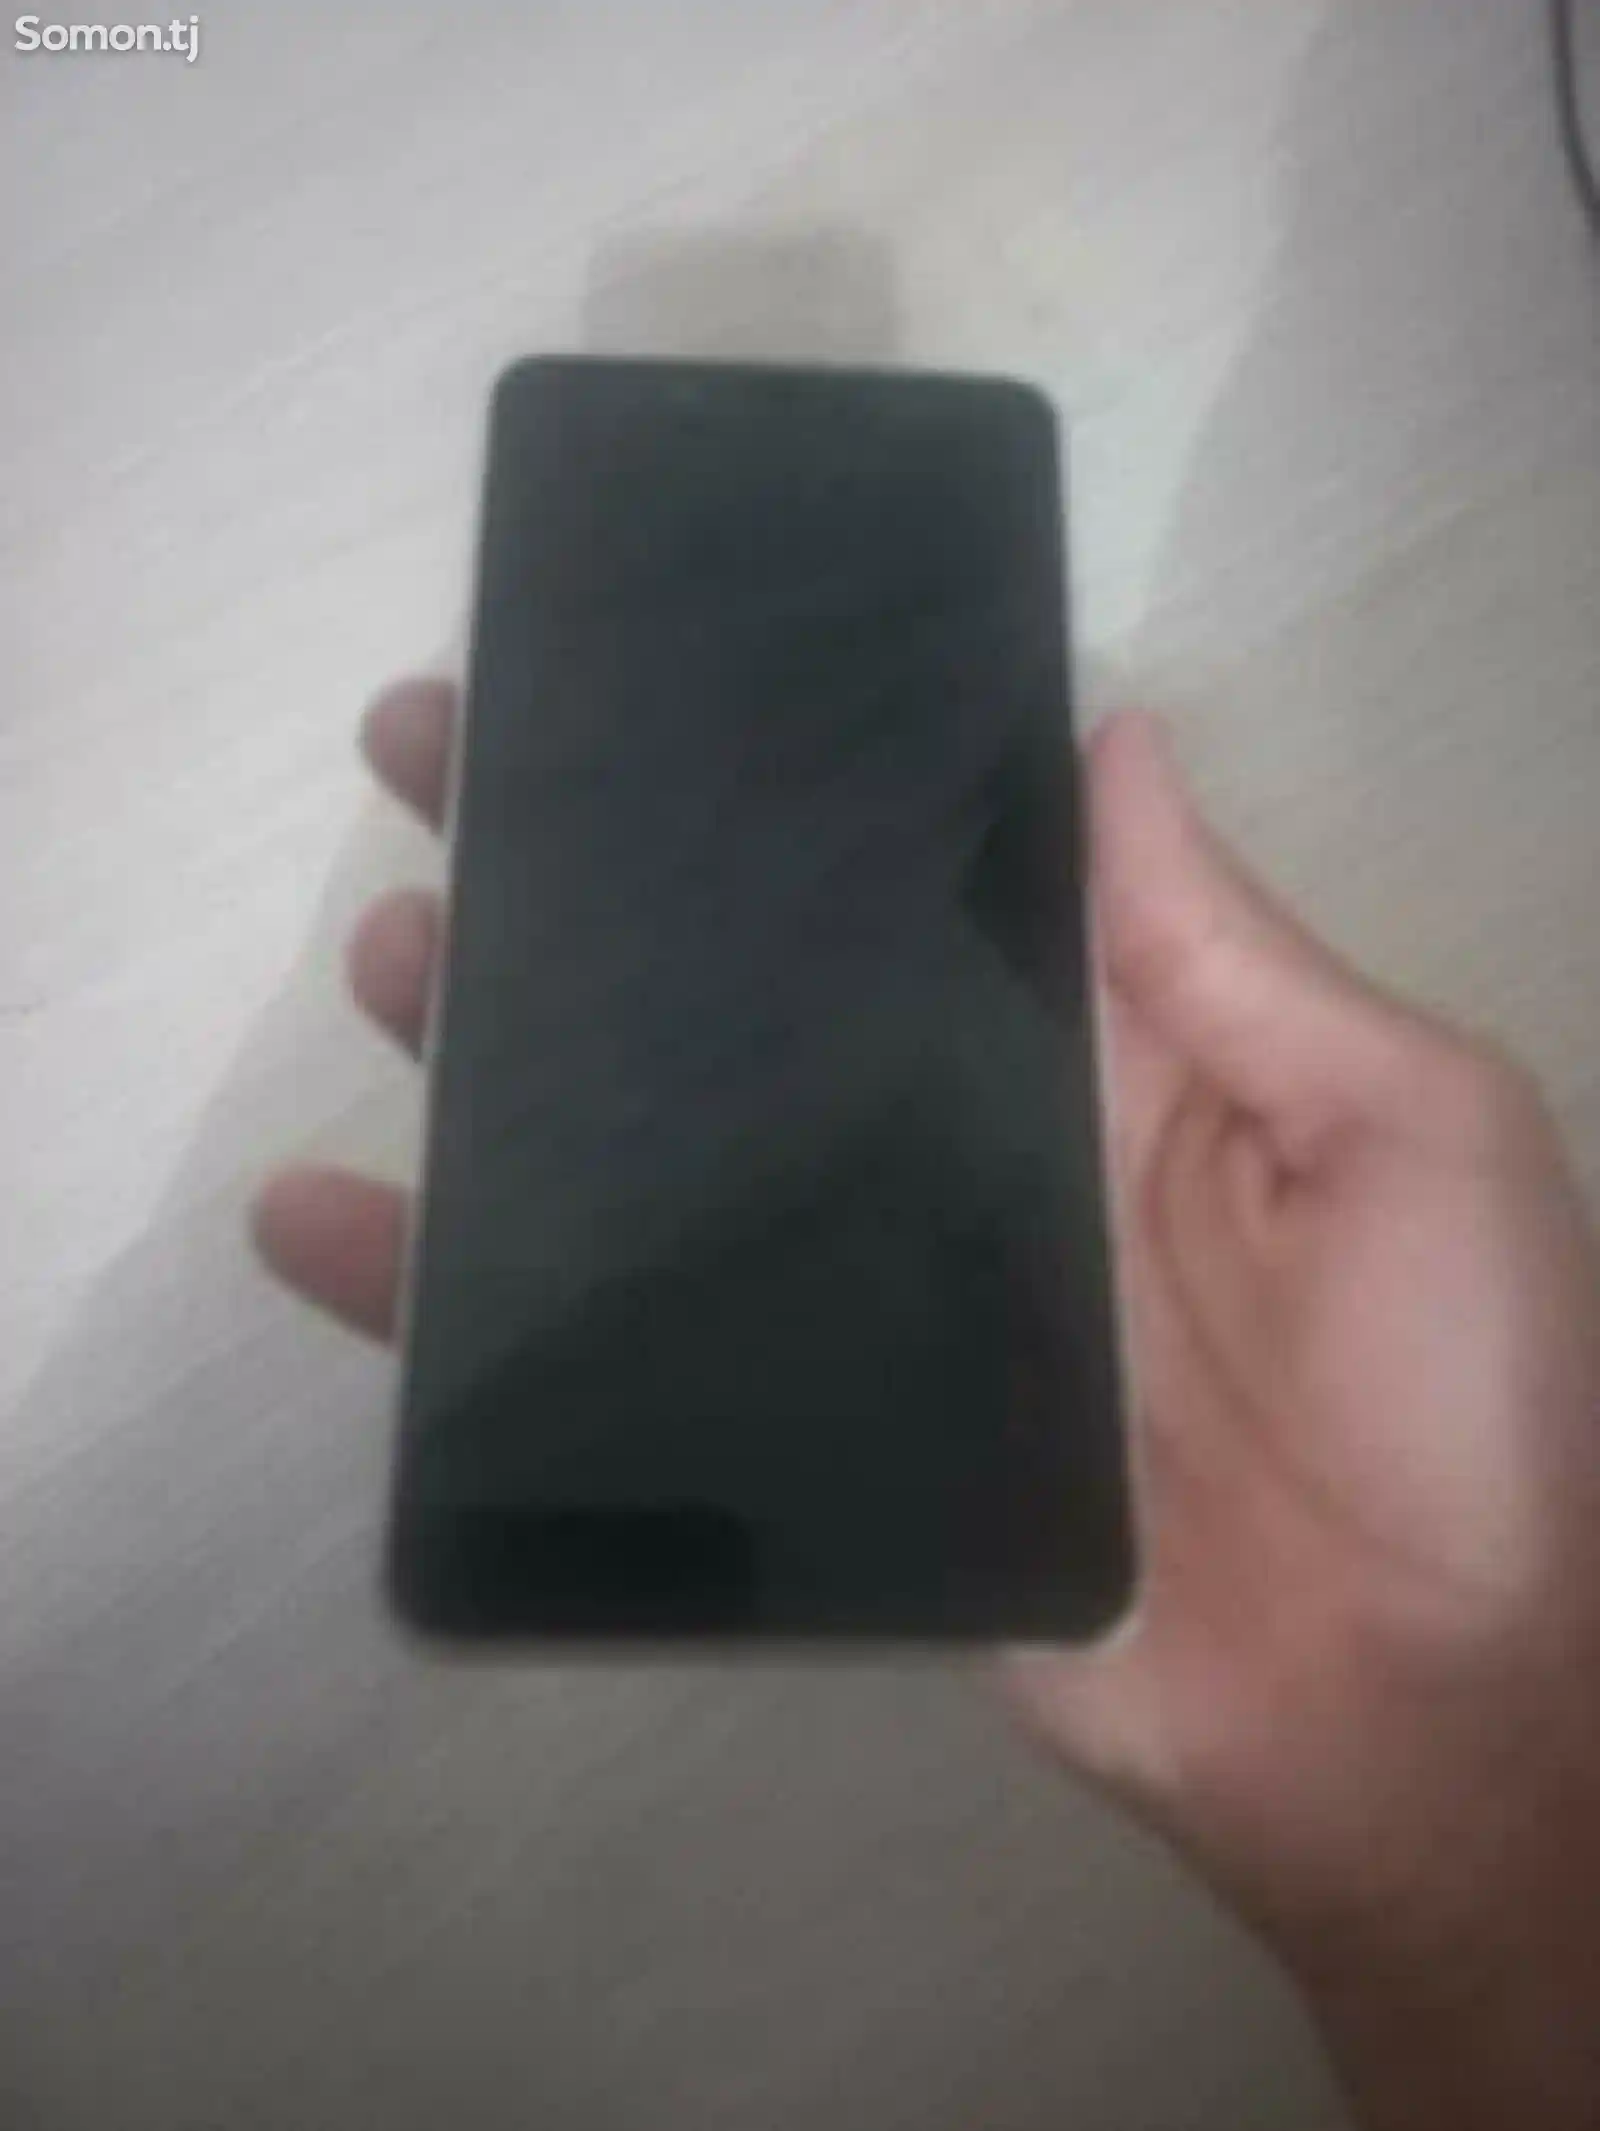 Xiaomi Redmi Note 5-2